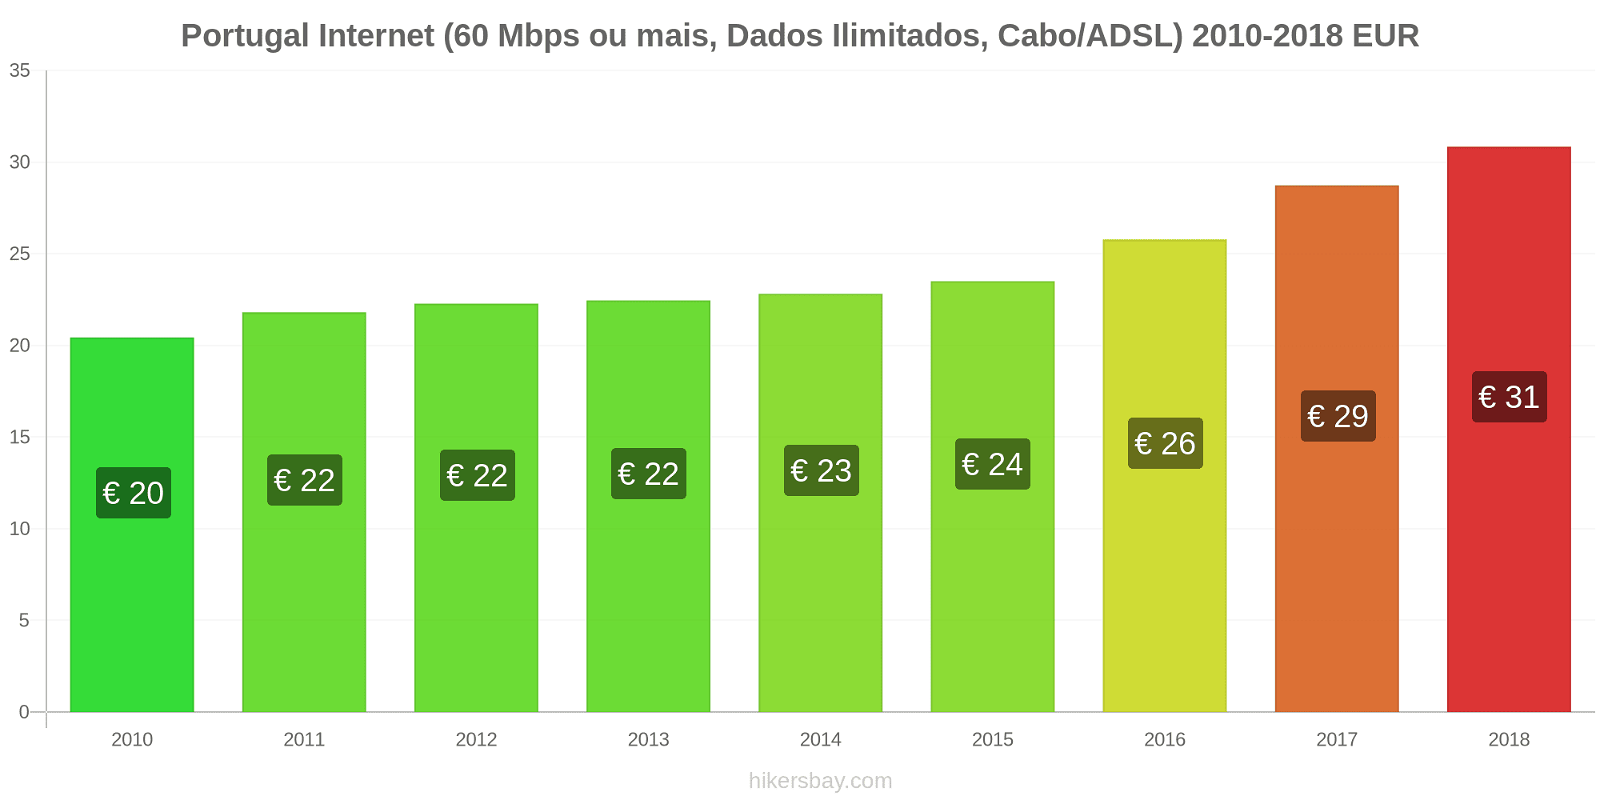 Portugal mudanças de preços Internet (60 Mbps ou mais, dados ilimitados, cabo/ADSL) hikersbay.com